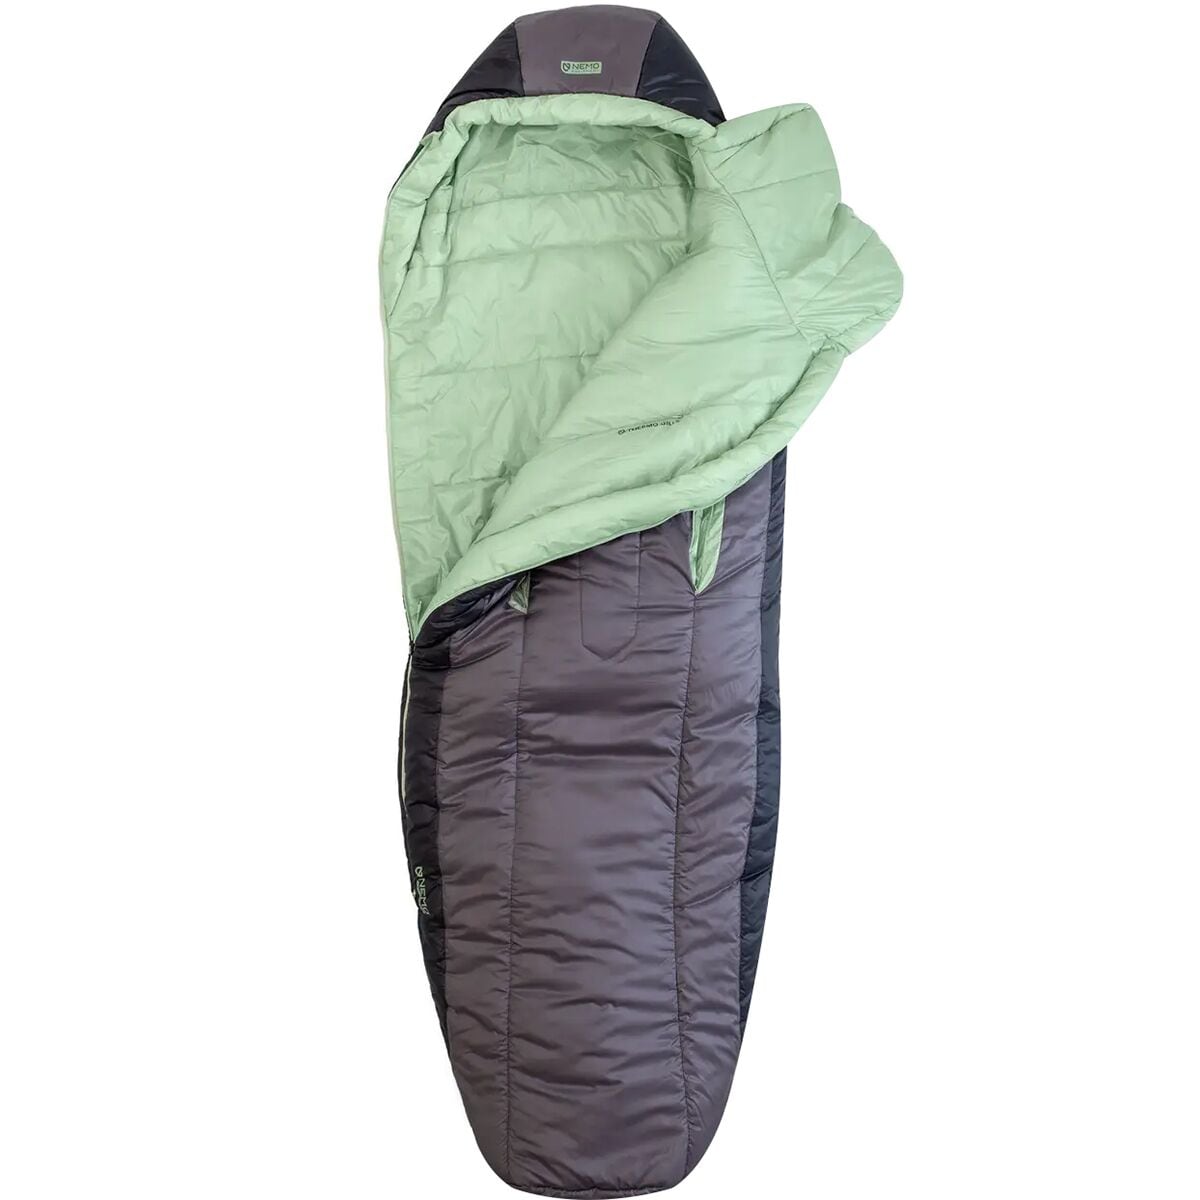 NEMO Equipment Inc. Forte Endless Promise Sleeping Bag: 35 Deg - Women's